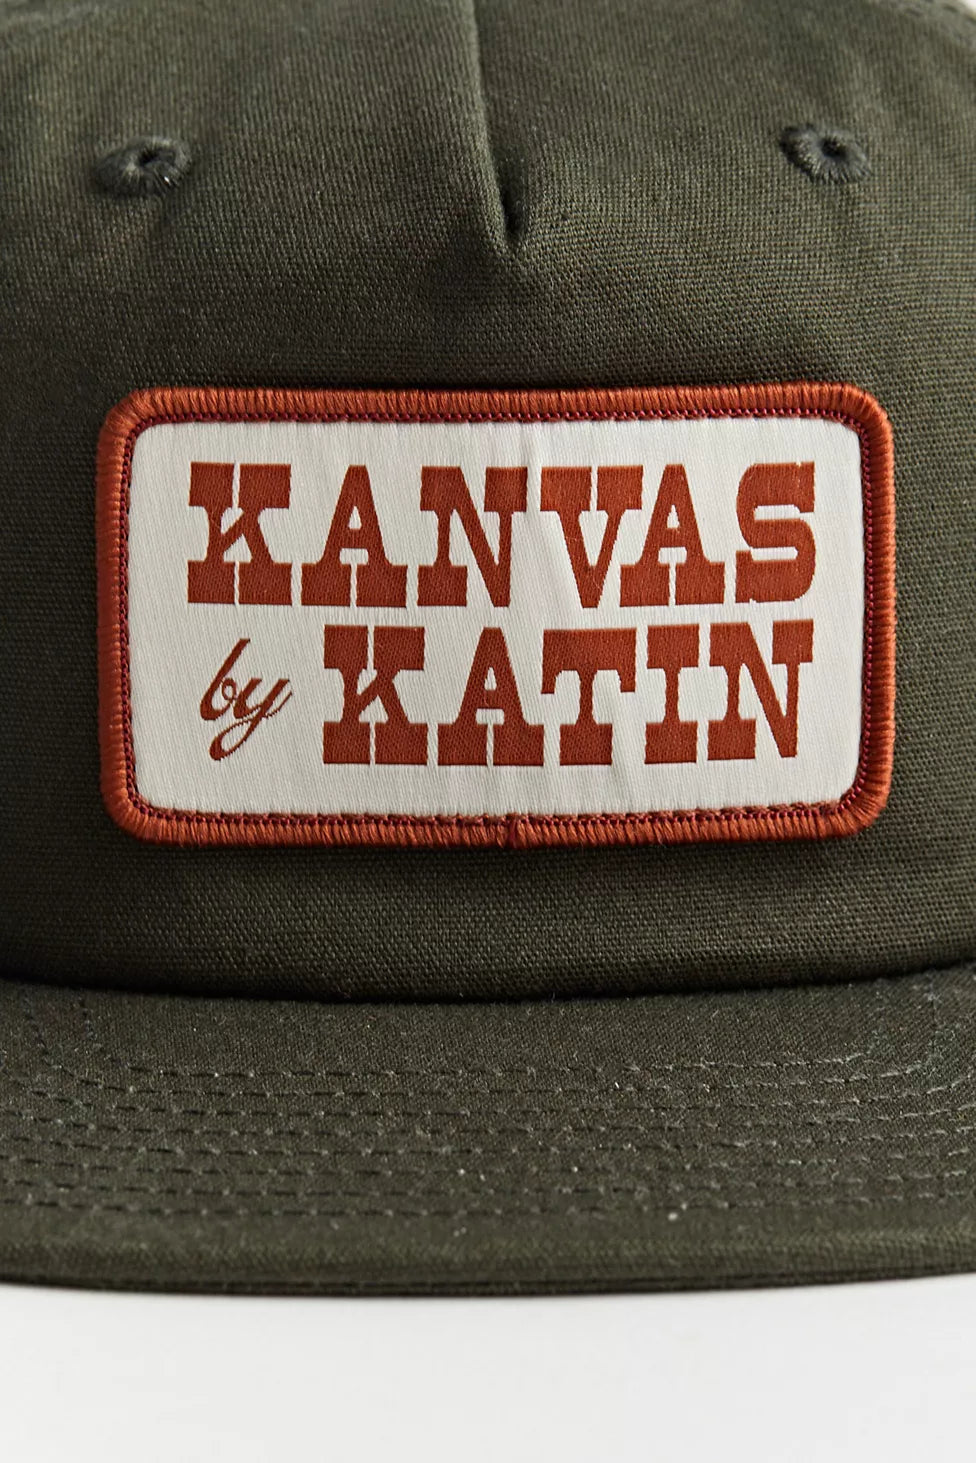 Katin Corral Strapback Hat